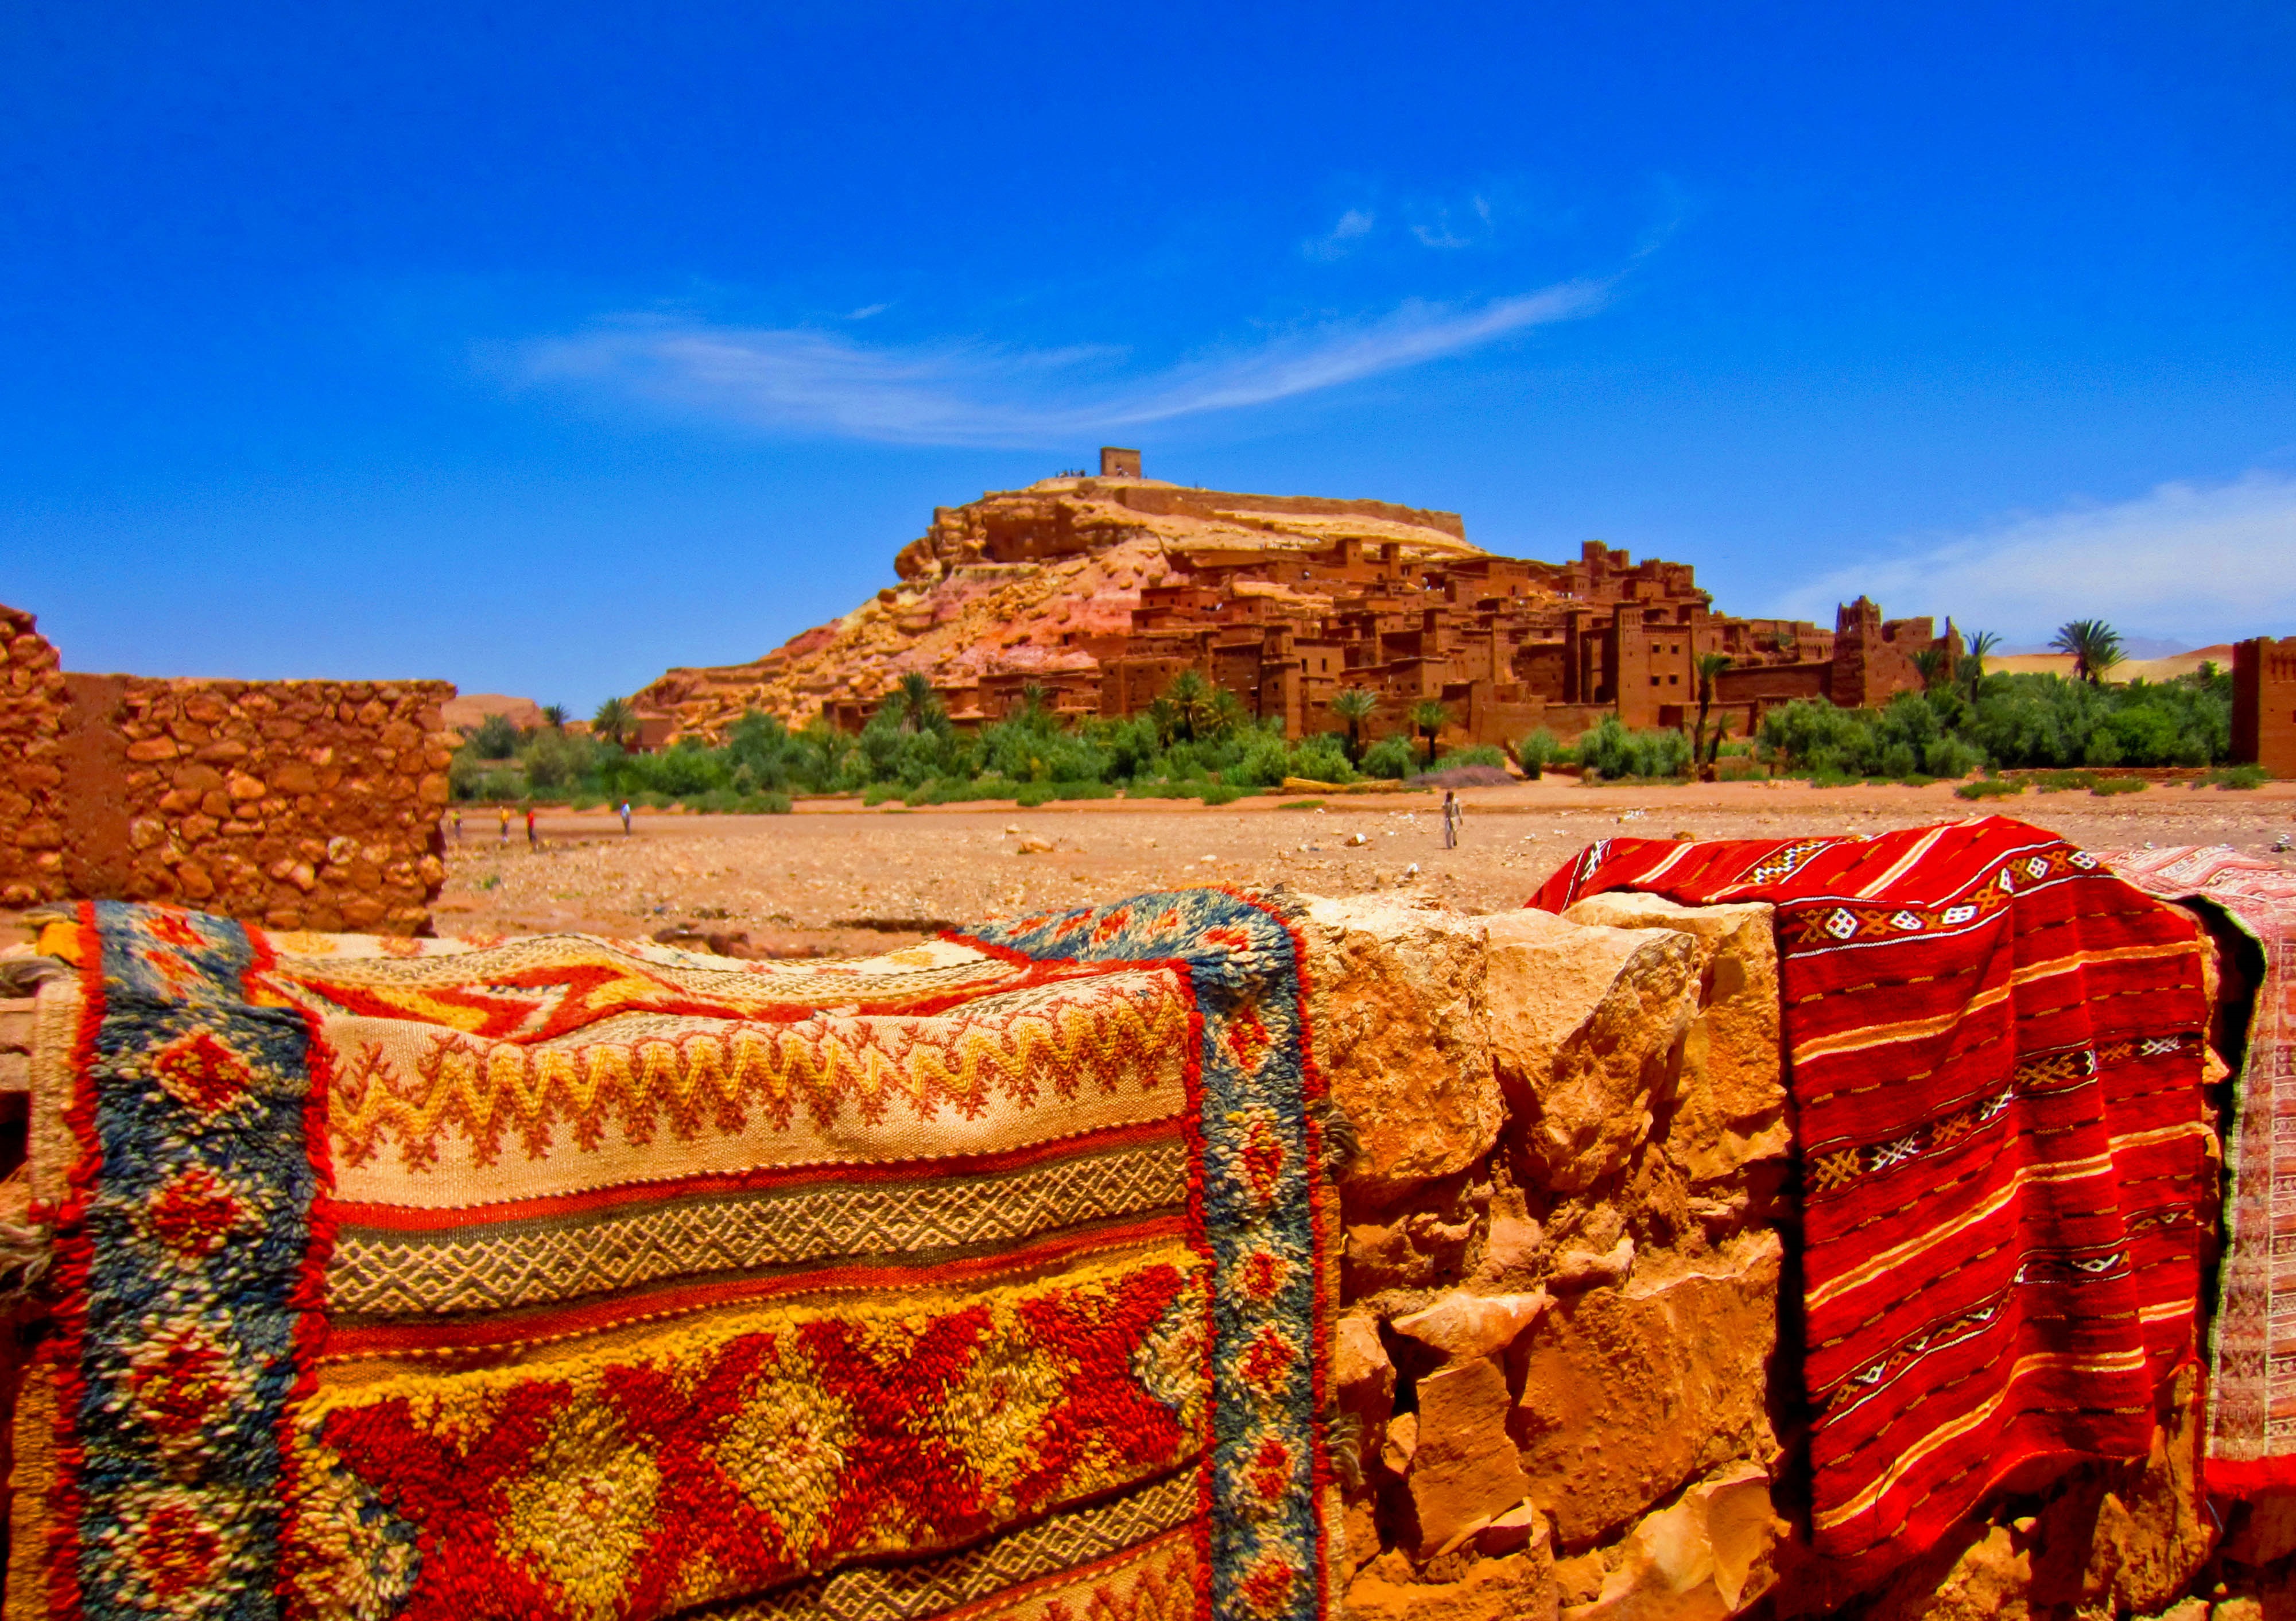 Ouarzazate ~ Ait Ben Haddou (UNESCO World Heritage)